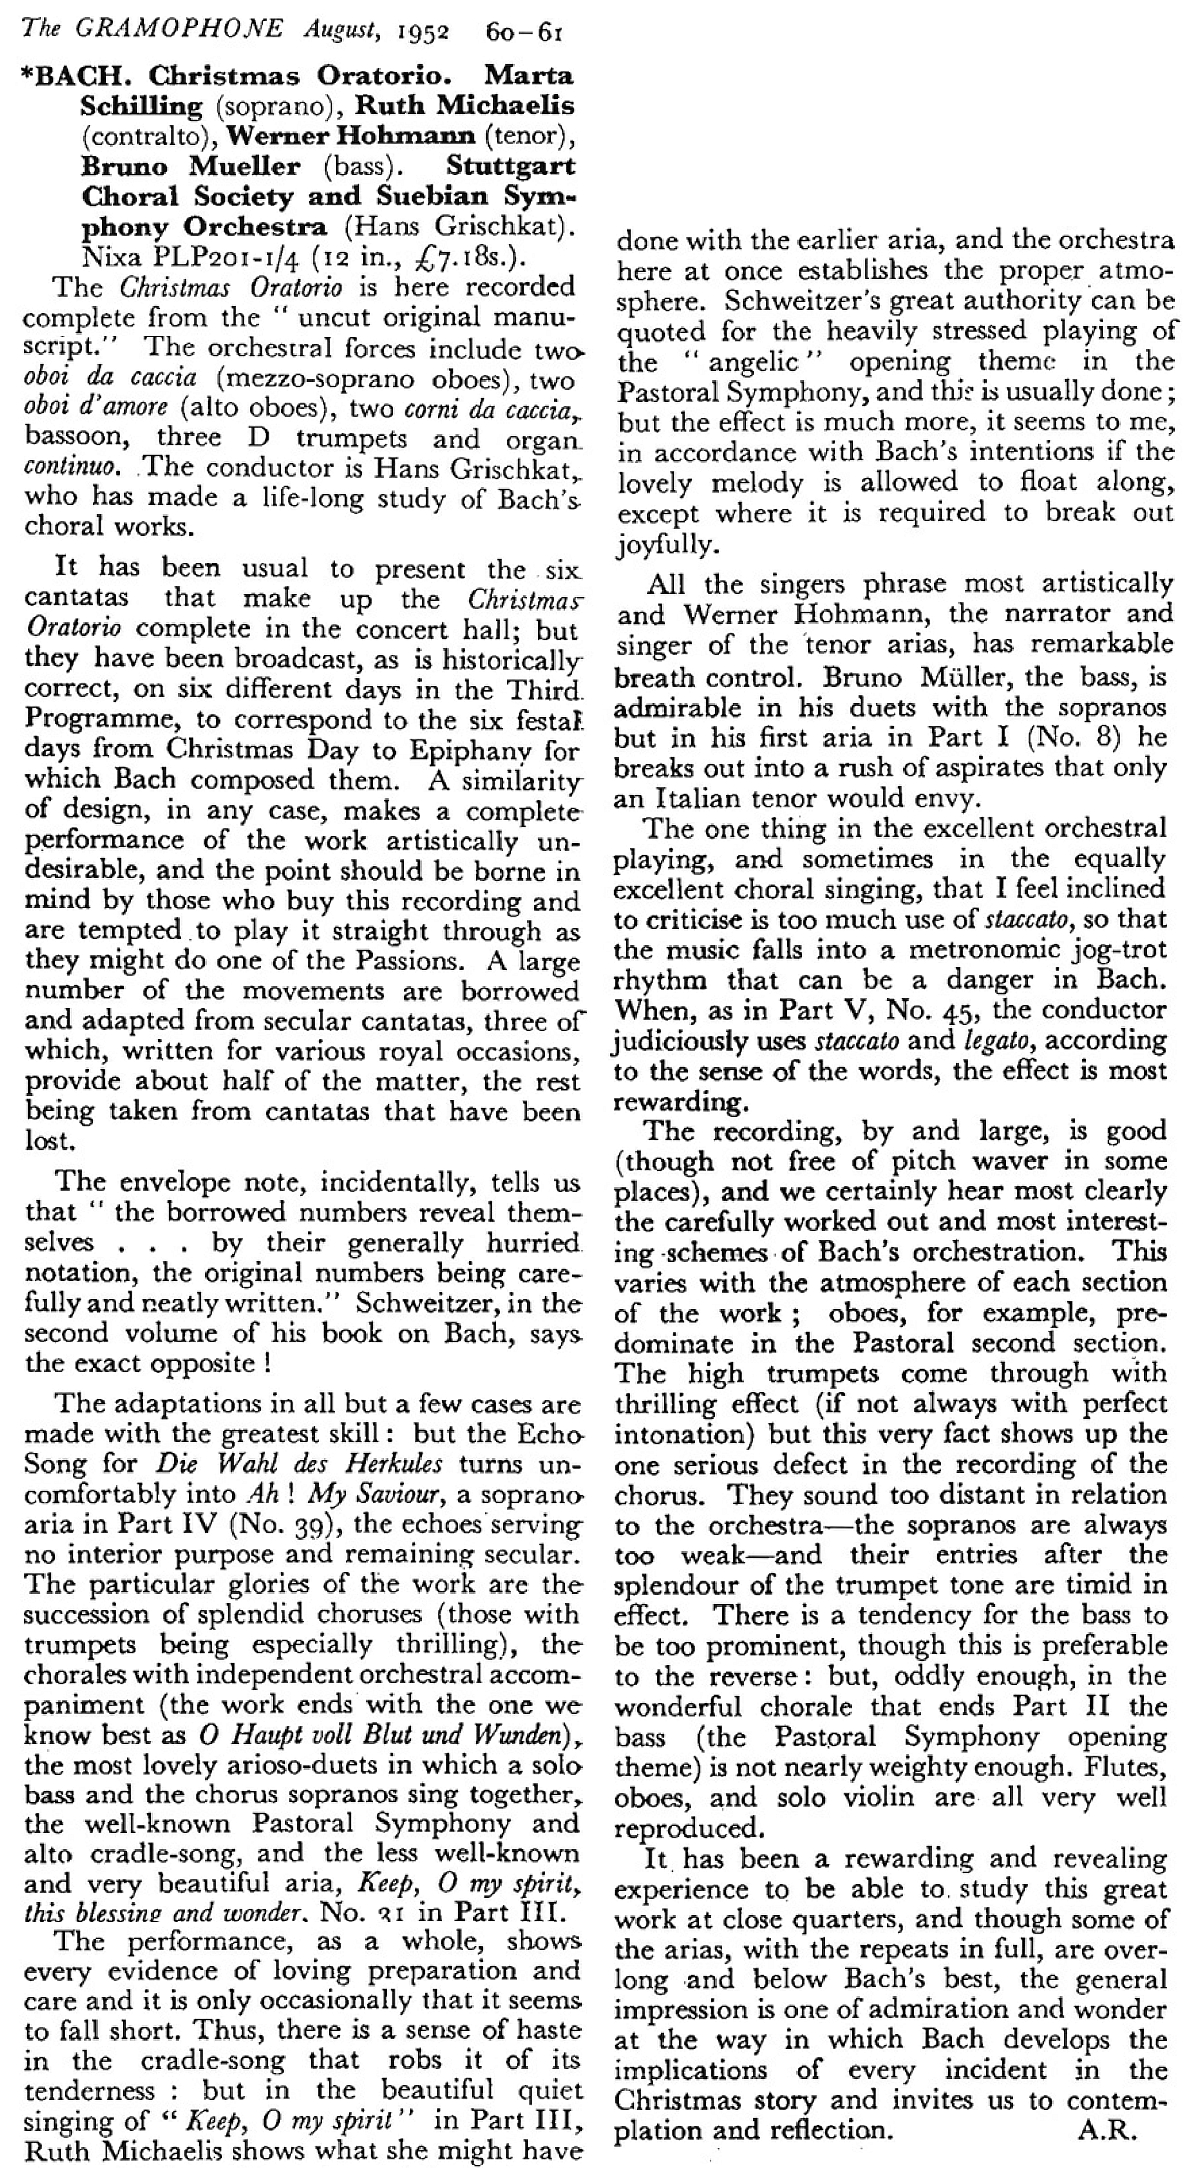 texte de Alec Robertson publié dans la revue «The Gramophone», août 1952, pages 60-61, cliquer pour une vue agrandie